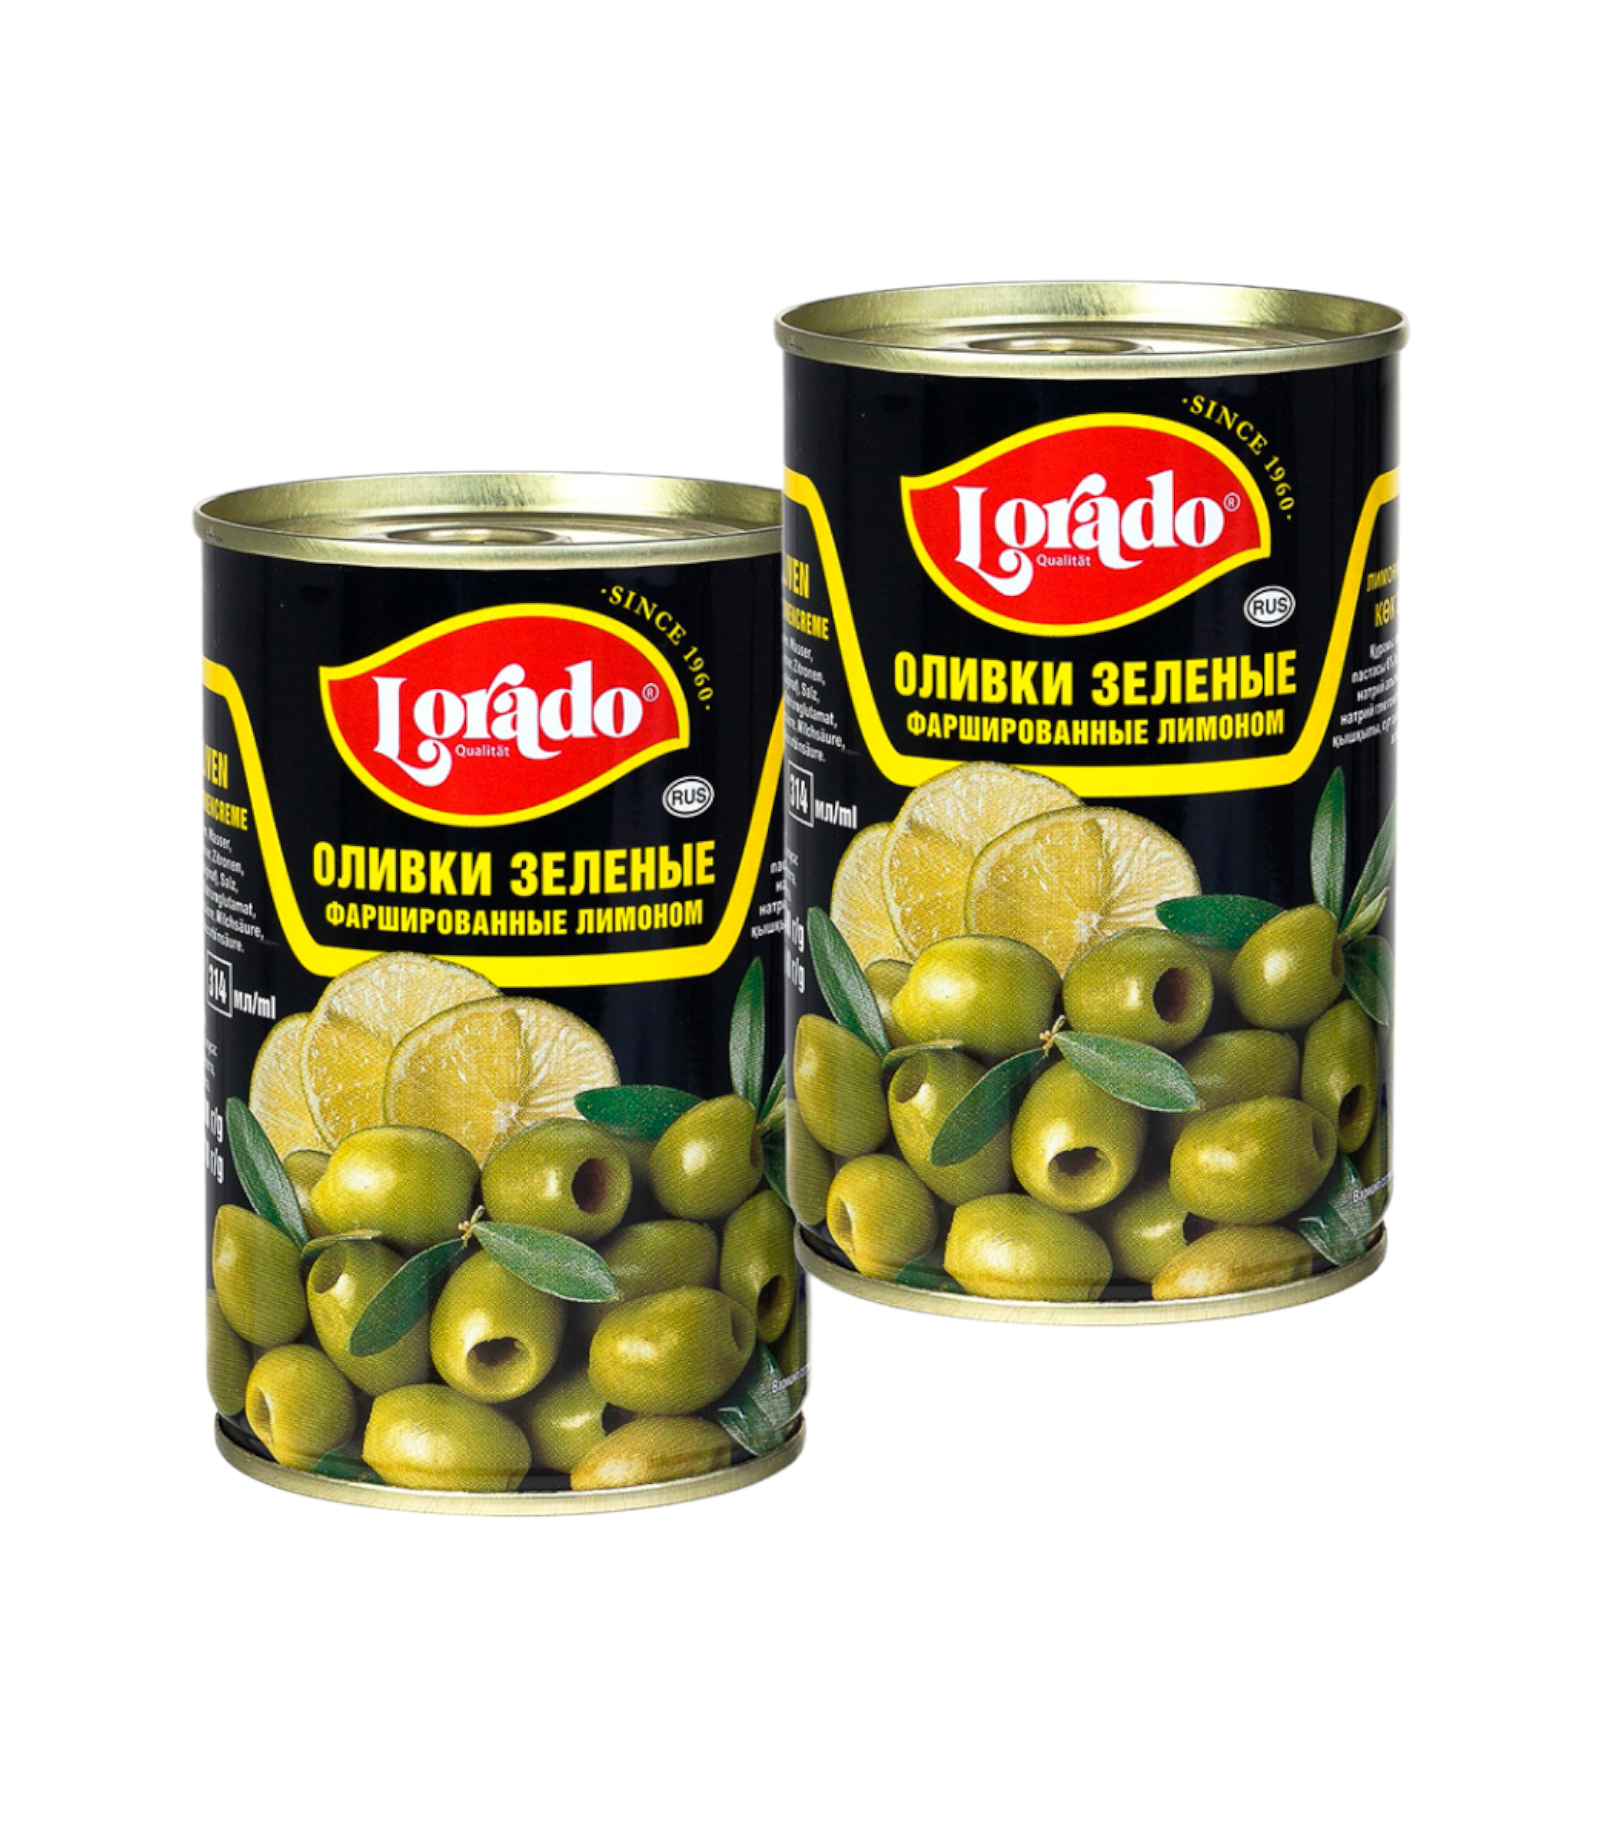 Оливки зеленые фаршированные лимоном, Lorado, 2 шт. по 314 мл